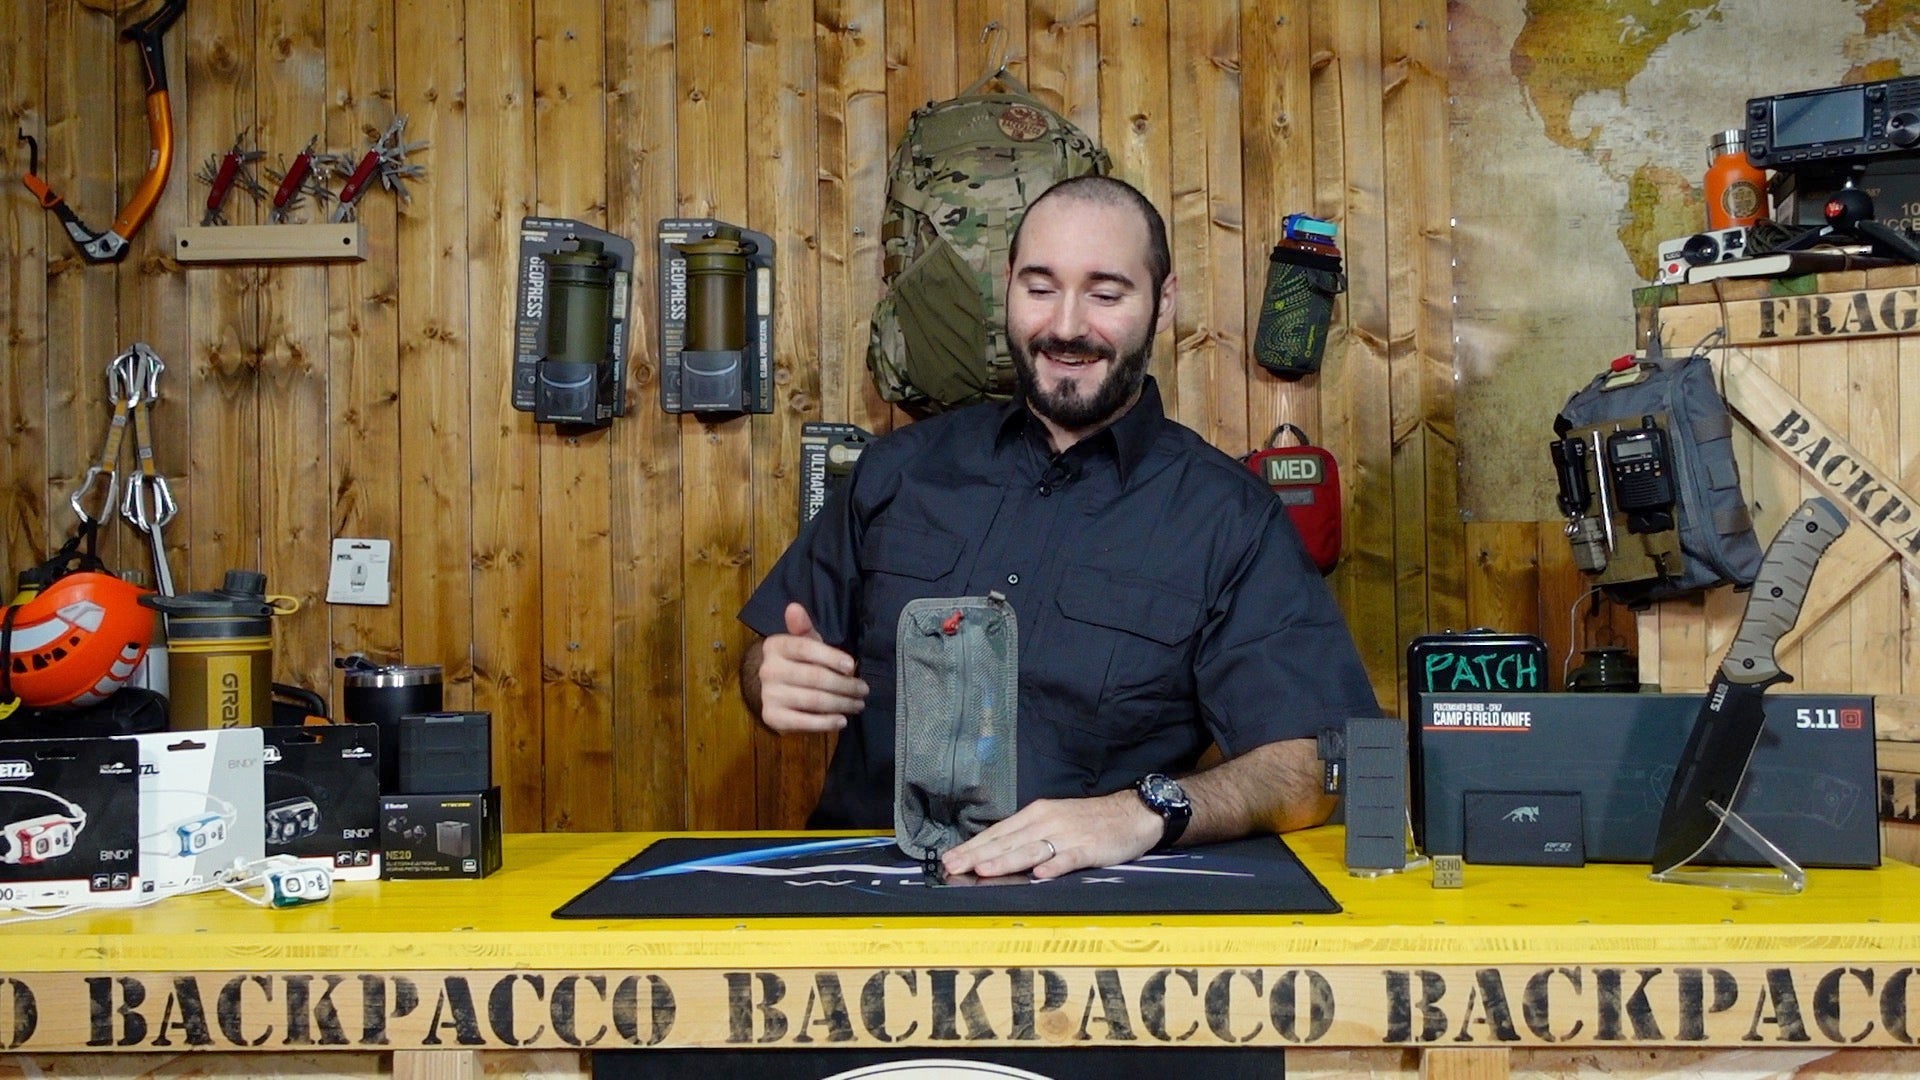 Paolo di Backpacco spiega le Pentagon trinity pouch